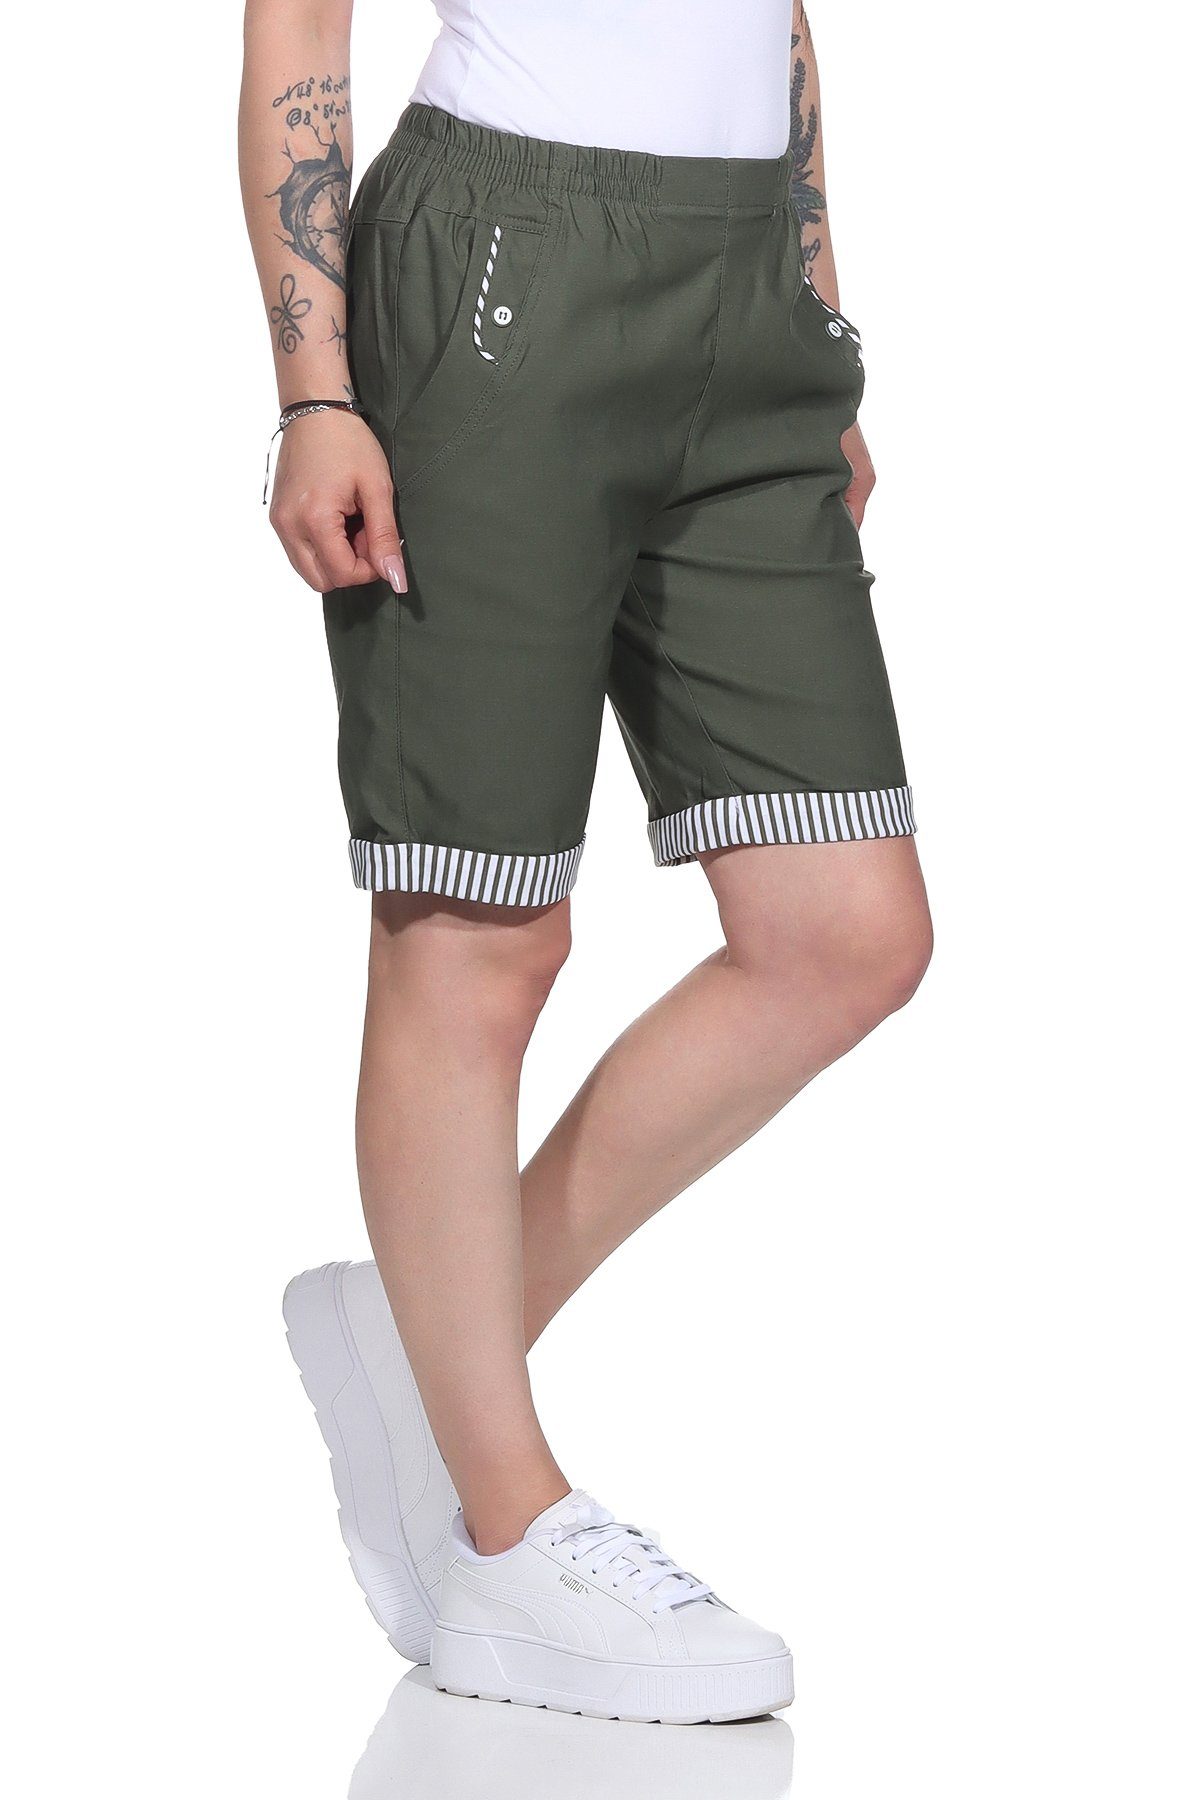 Damen Details Damenmode mit Größen Strandbermuda erhältlich, mit Shorts Khaki Maritime Bermuda großen Sommer Aurela elastischem maritimen Bund, in Shorts auch